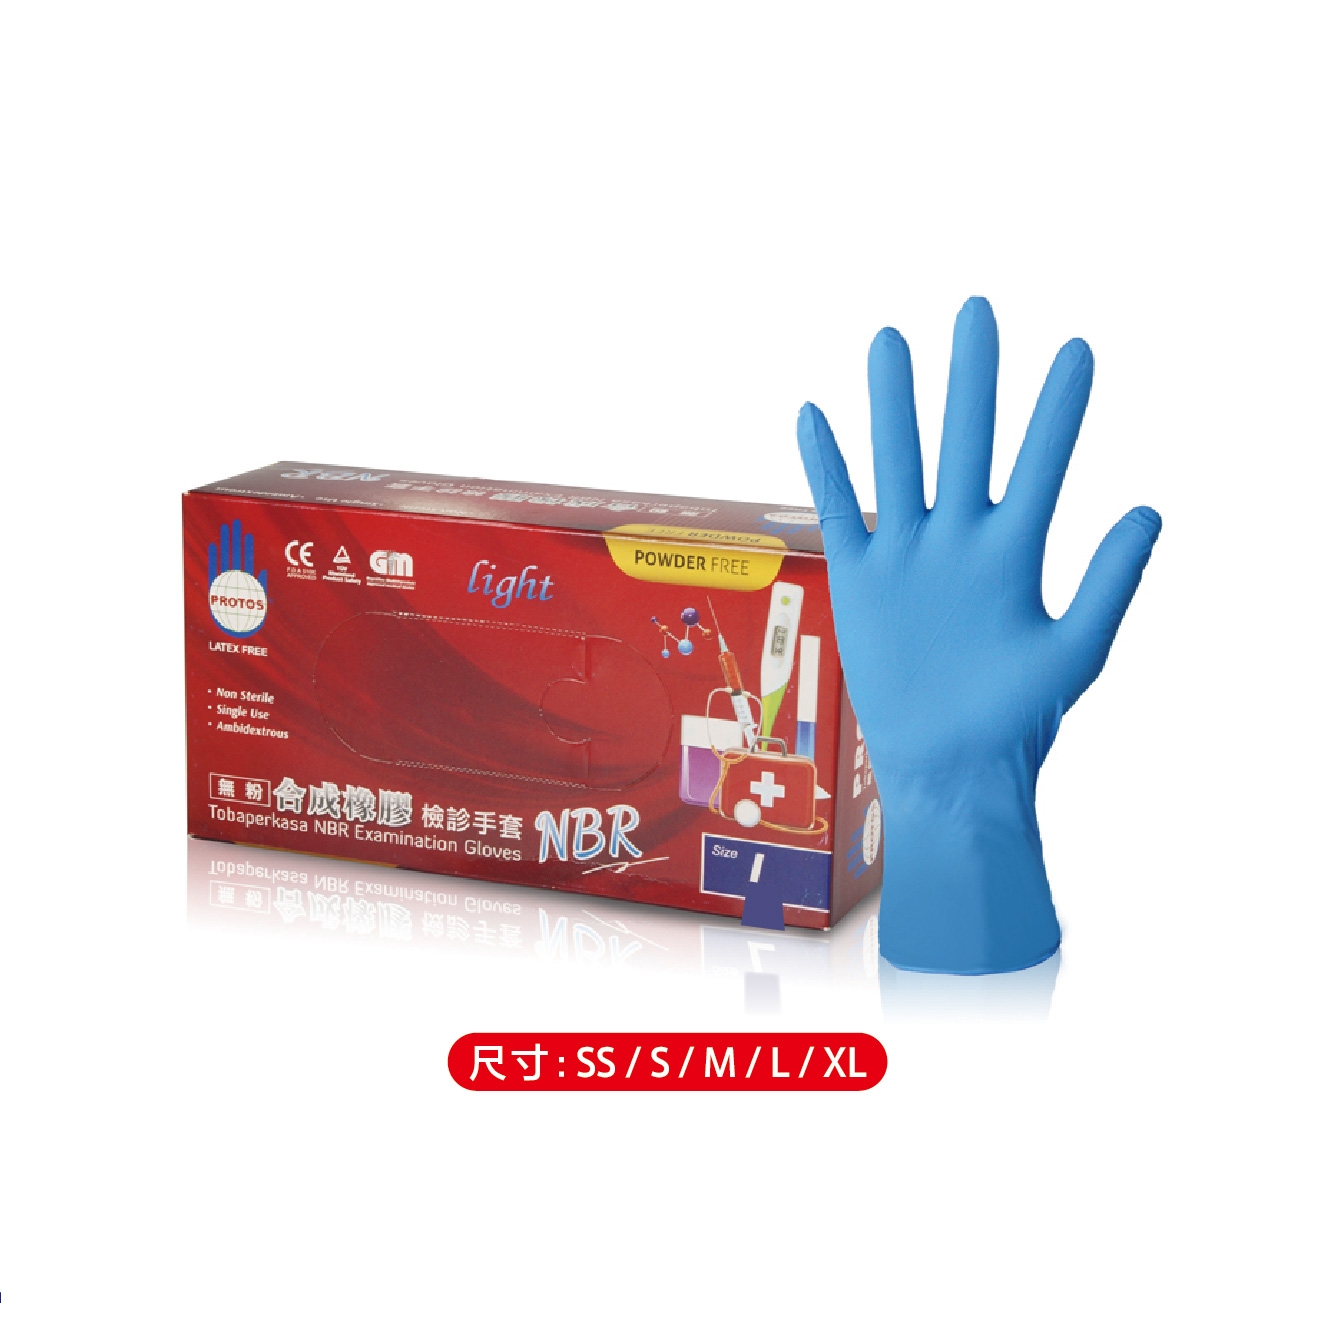 多倍 NBR合成橡膠 無粉檢診手套 輕量型藍色 100入/盒,美髮染髮,美容手套,拋棄式手套,丁晴手套,F00574